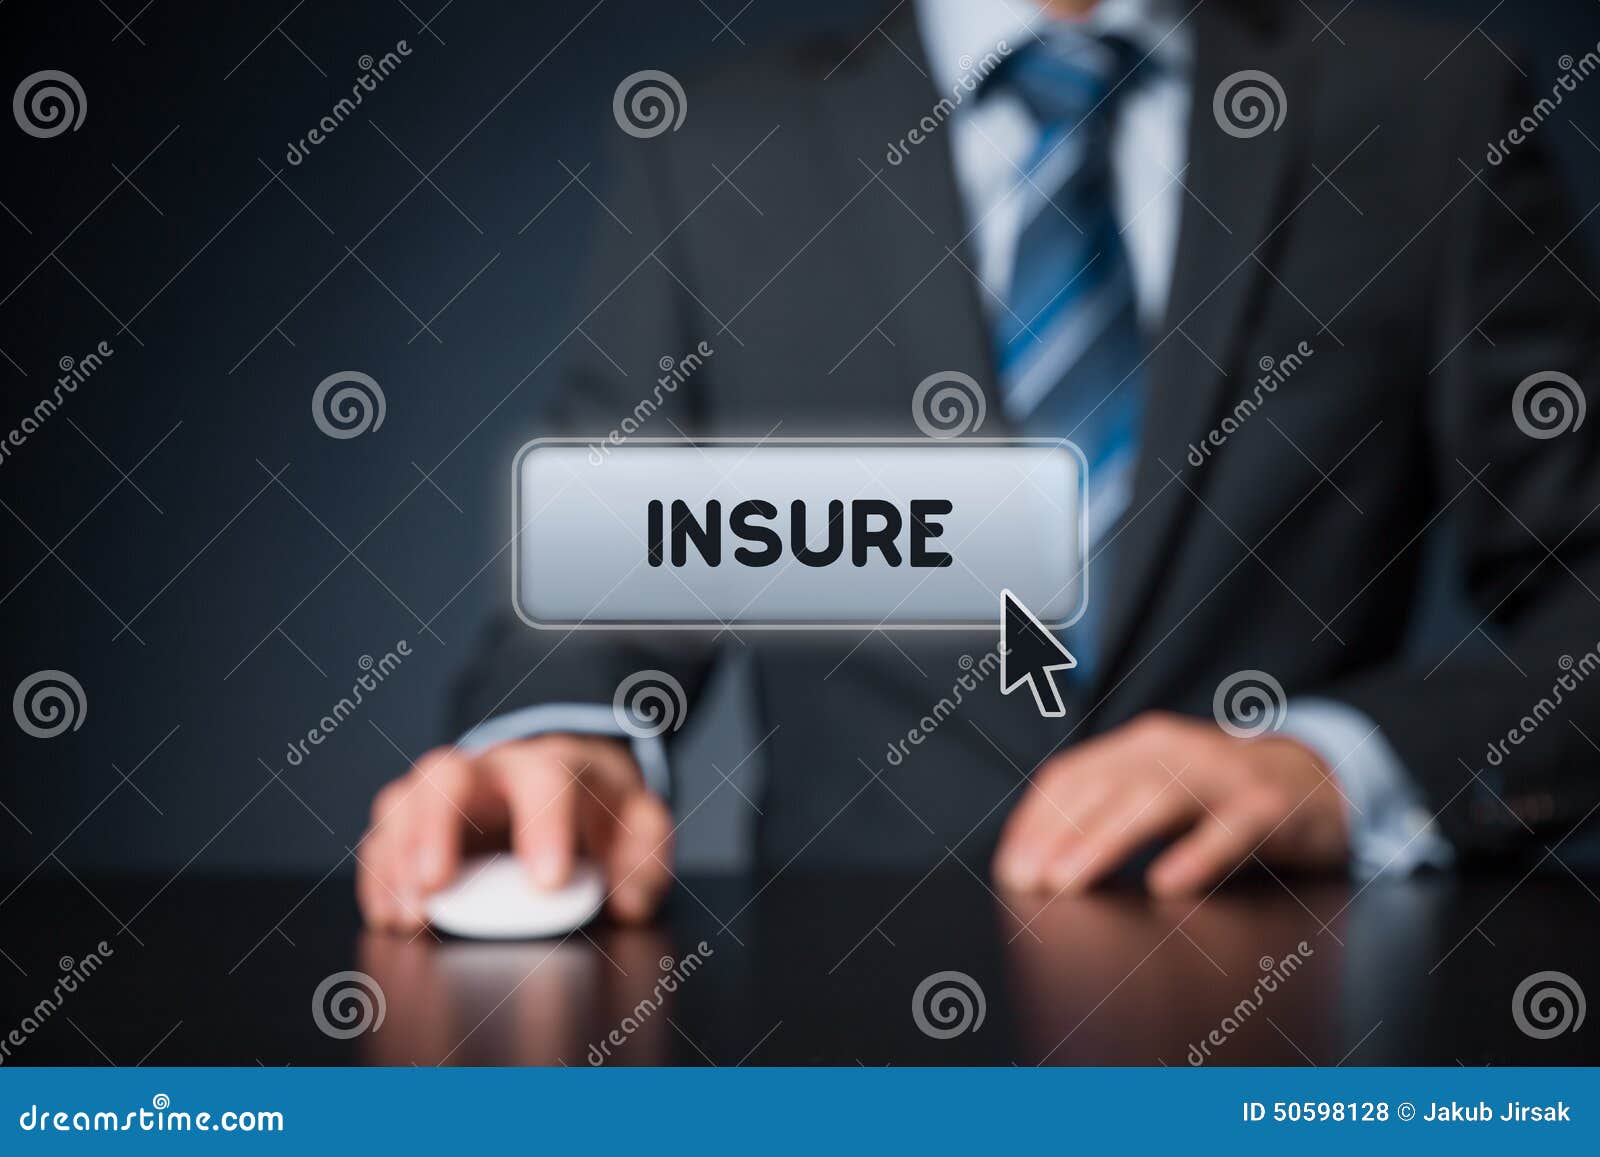 insure